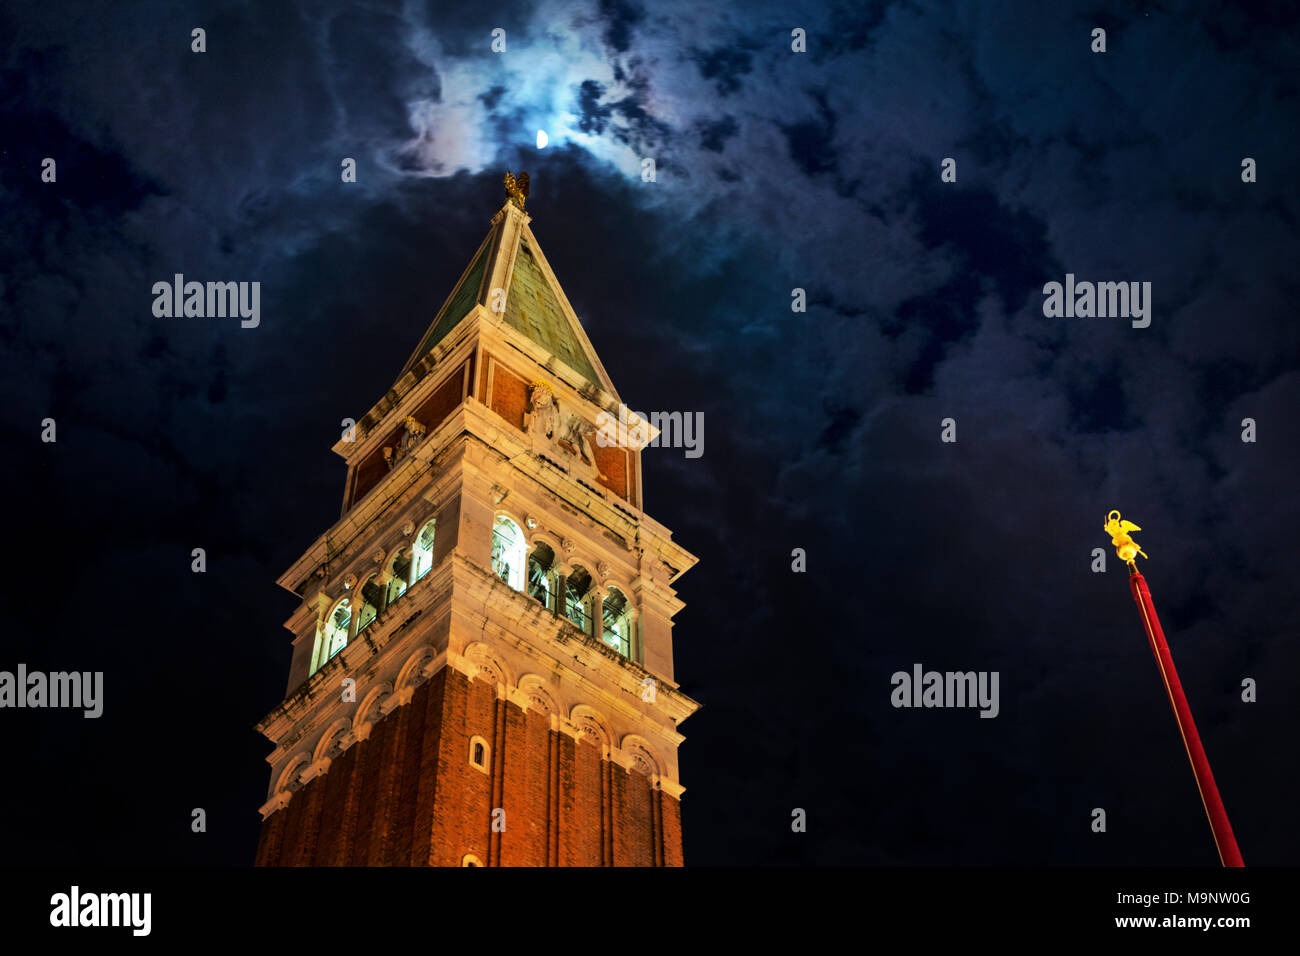 Il Campanile di Piazza San Marco a Venezia si vede di notte con oro rosso con punta pennone, illuminato il campanile e il tetto a piramide per raggiungere la luna Foto Stock